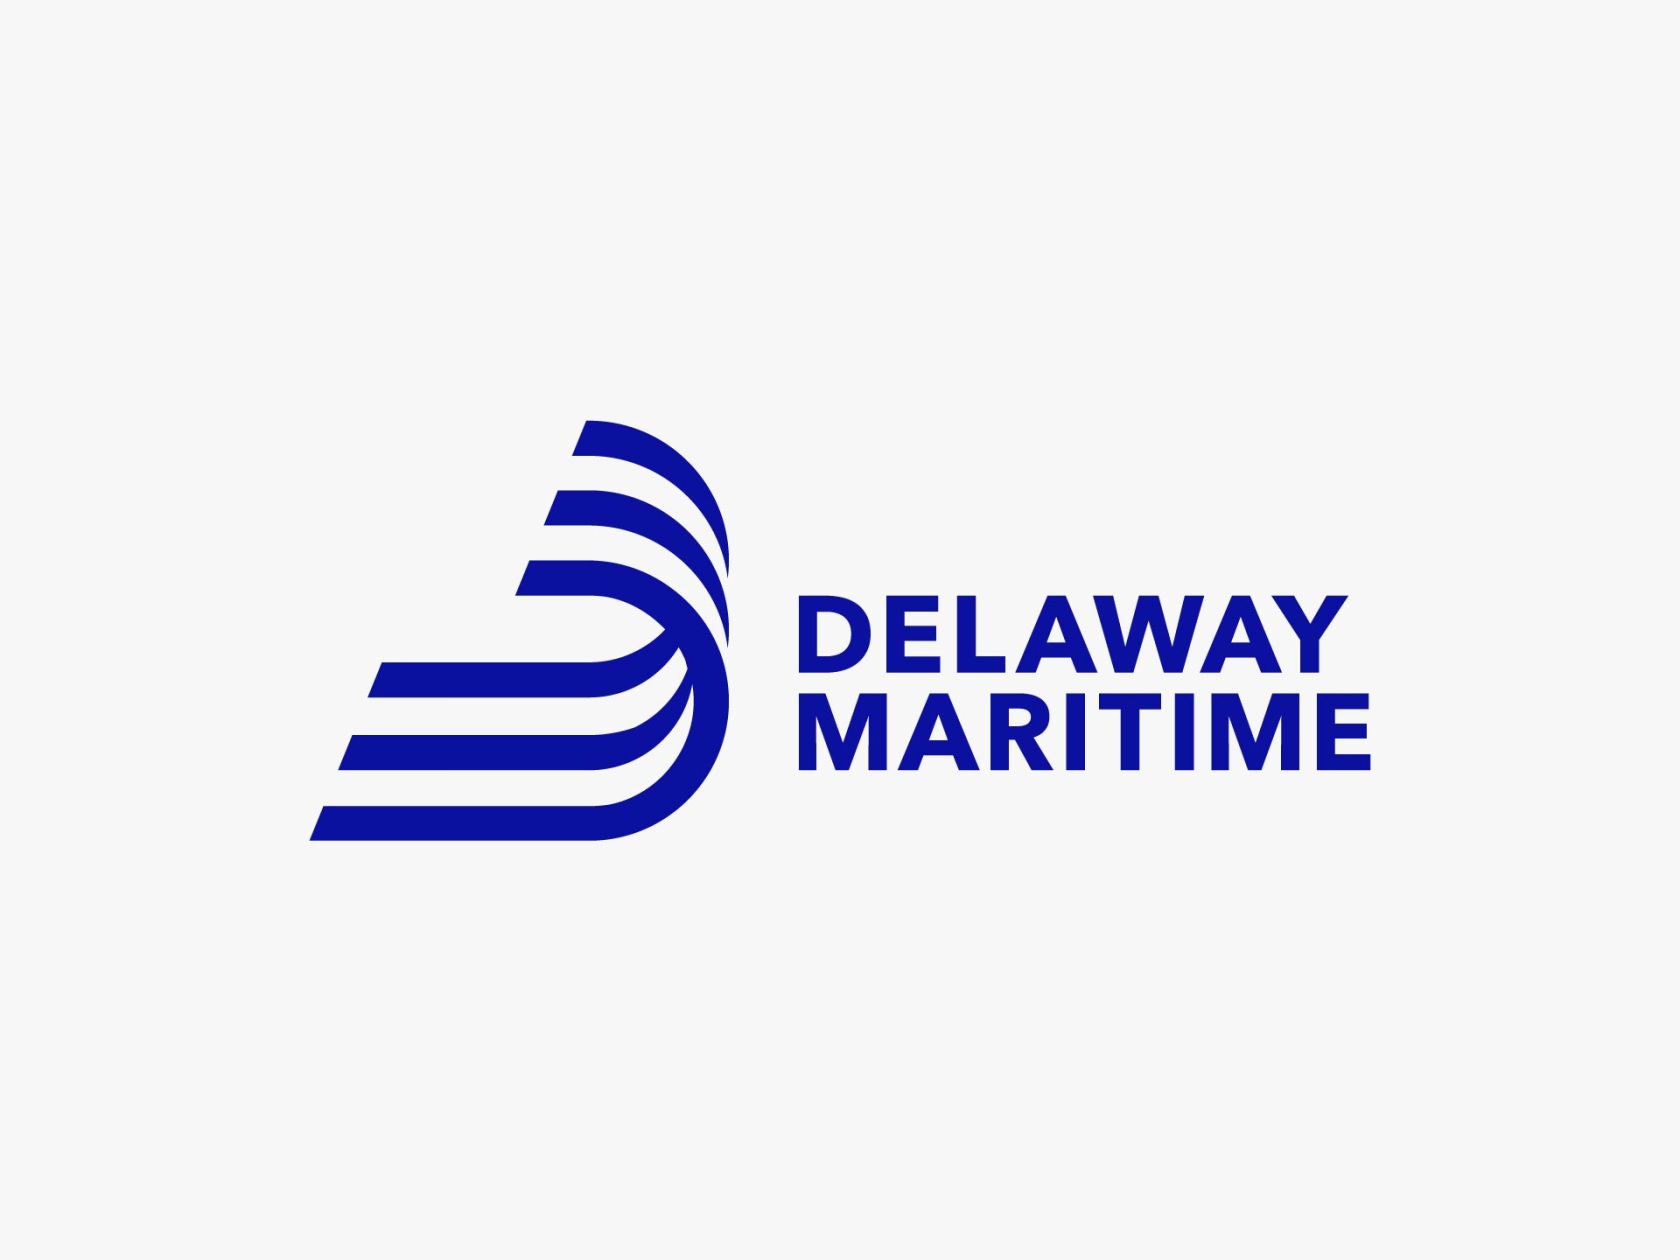 delaway-maritime-logo-03